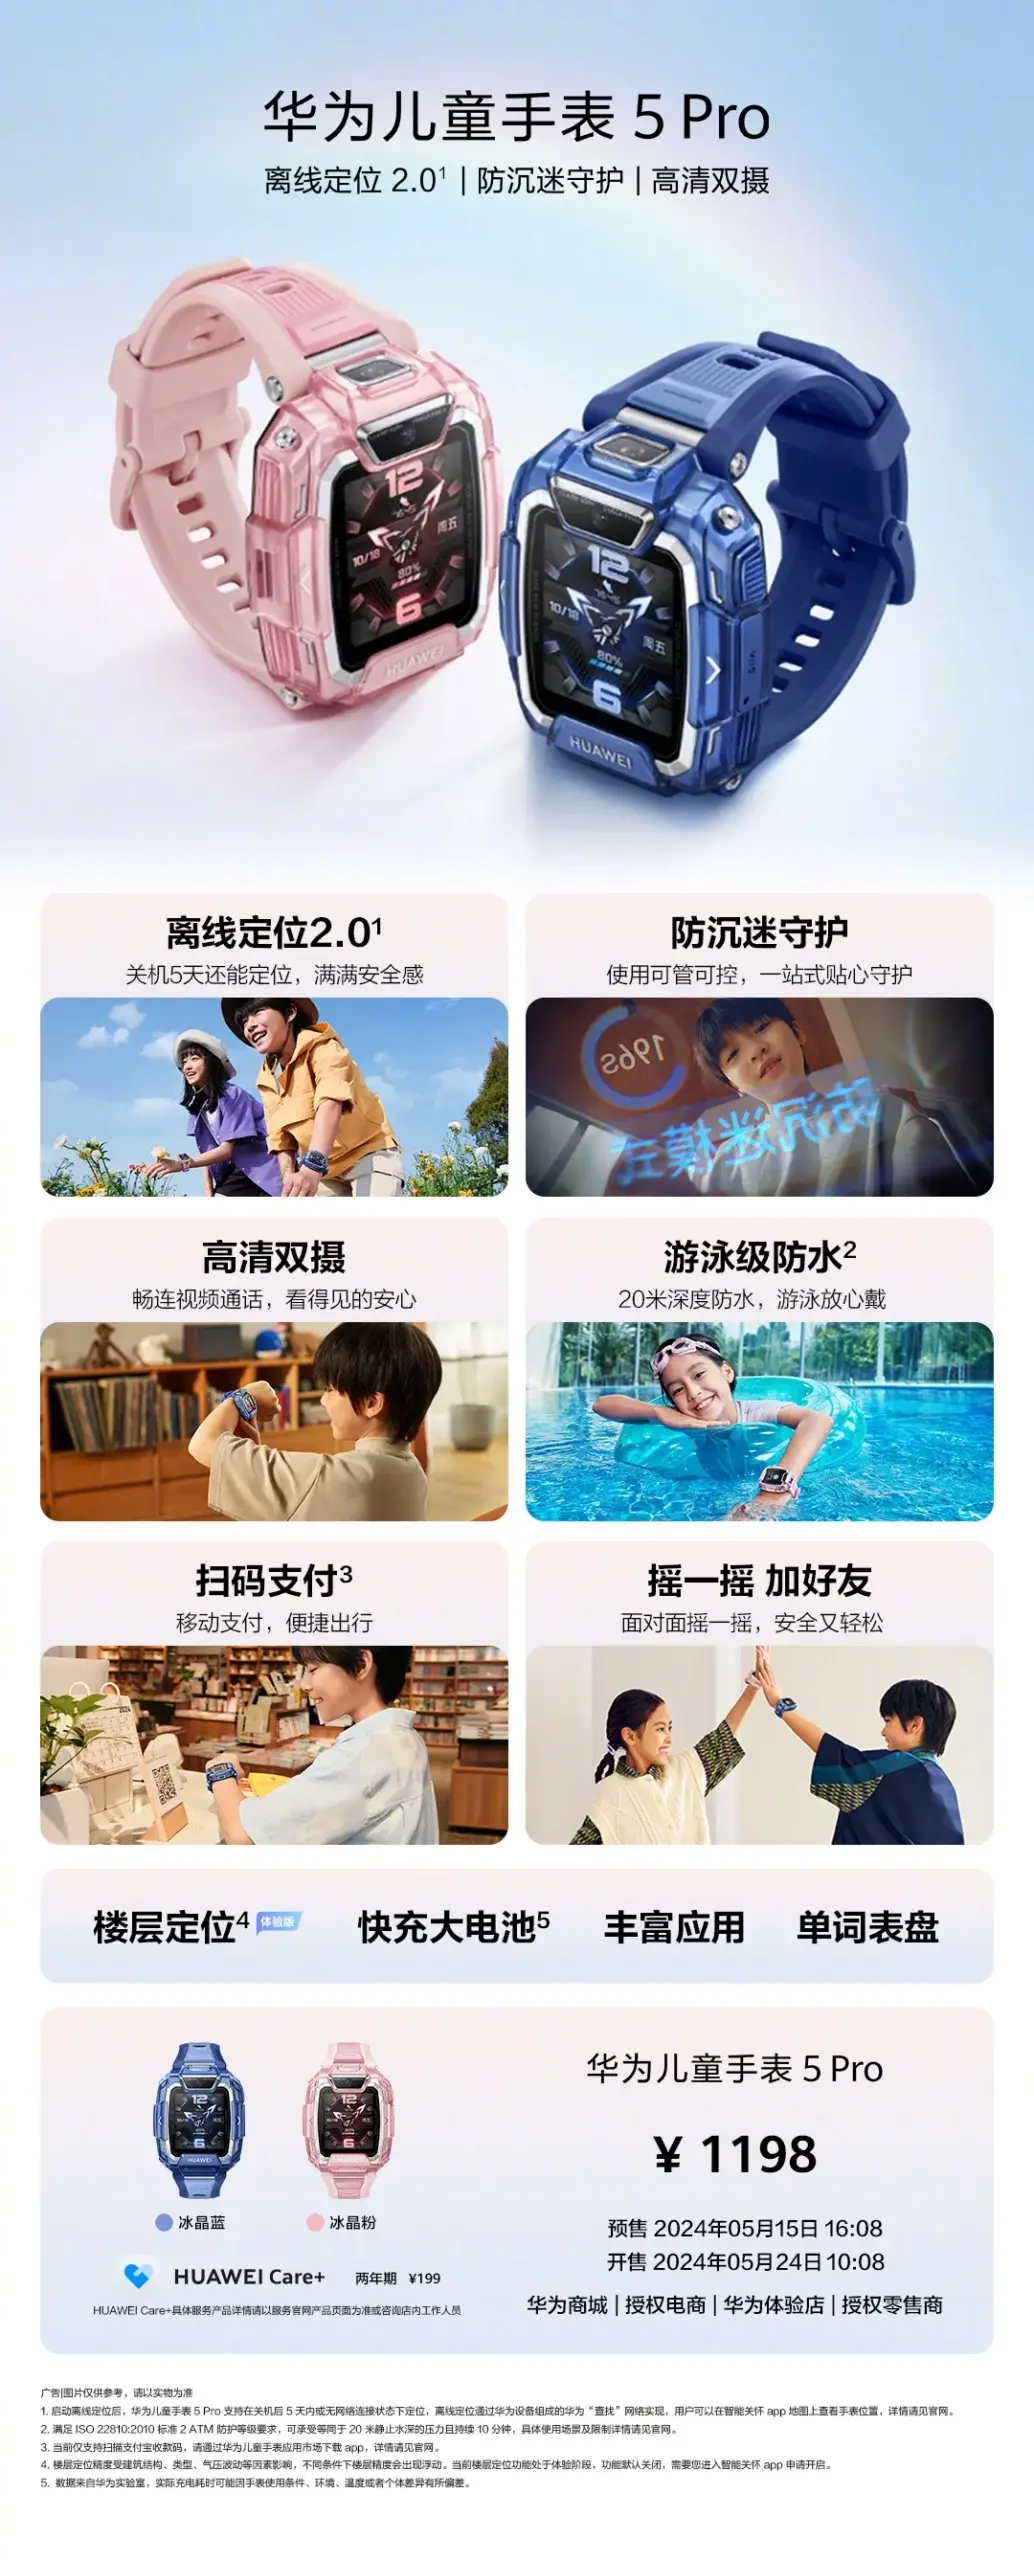 Children's watch Huawei 5 Pro